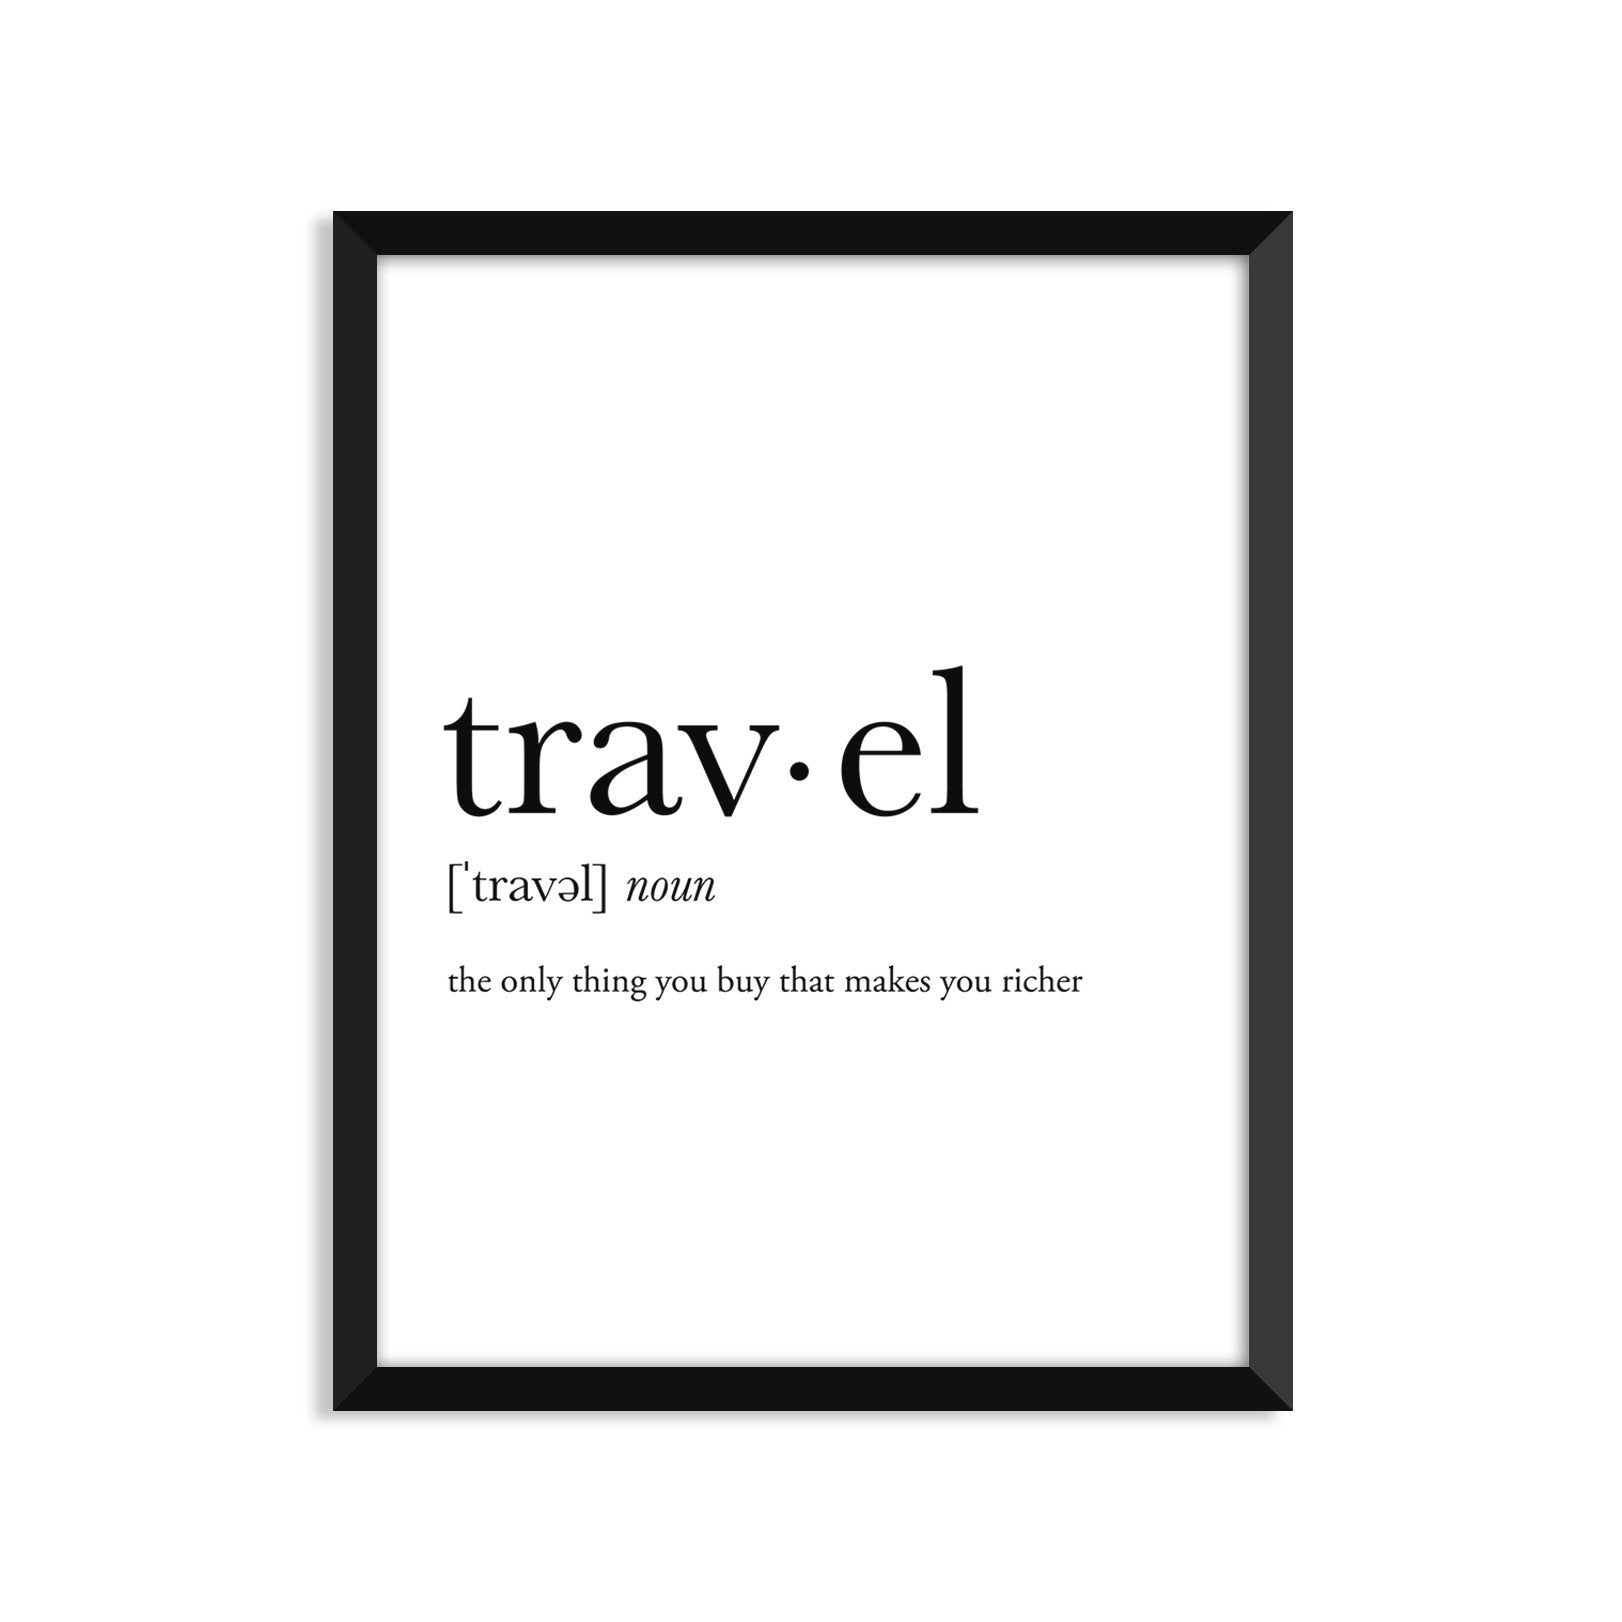 travel noun greeting card